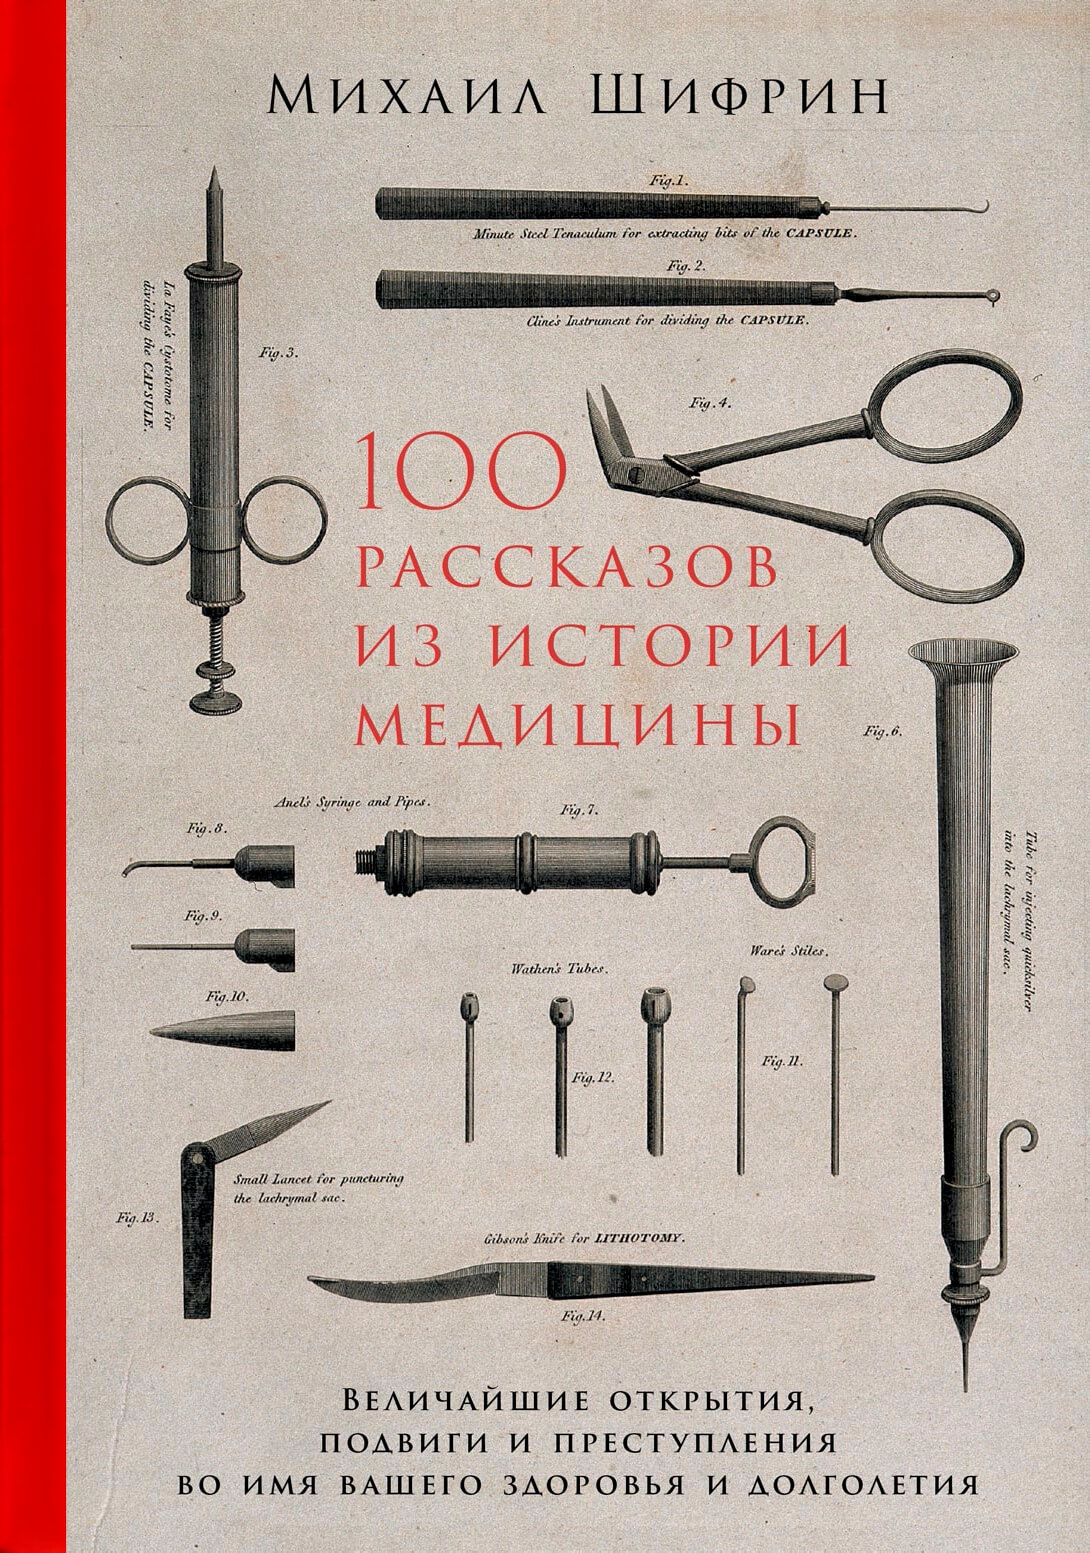 100 рассказов из истории медицины. Автор — Михаил Шифрин. 